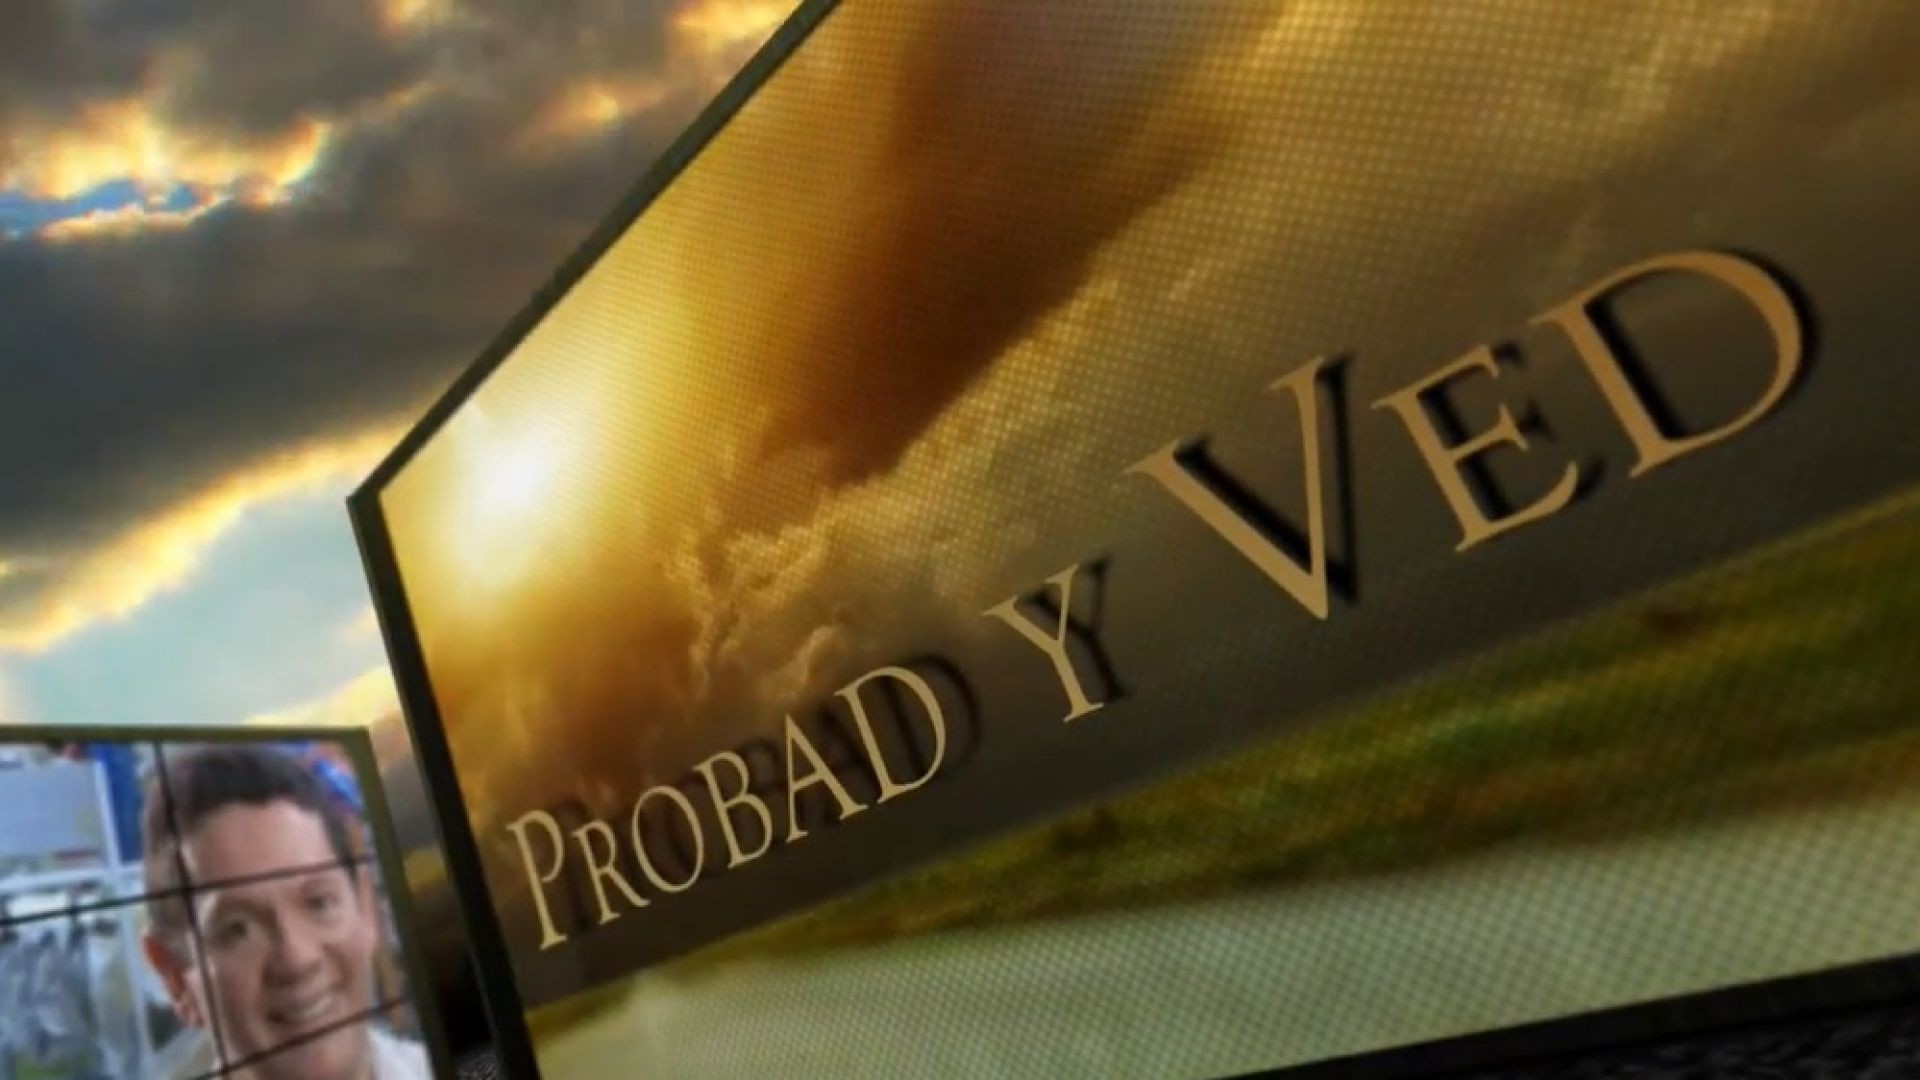 Probad y Ved 2013 - Primero Dios - 8/Jun